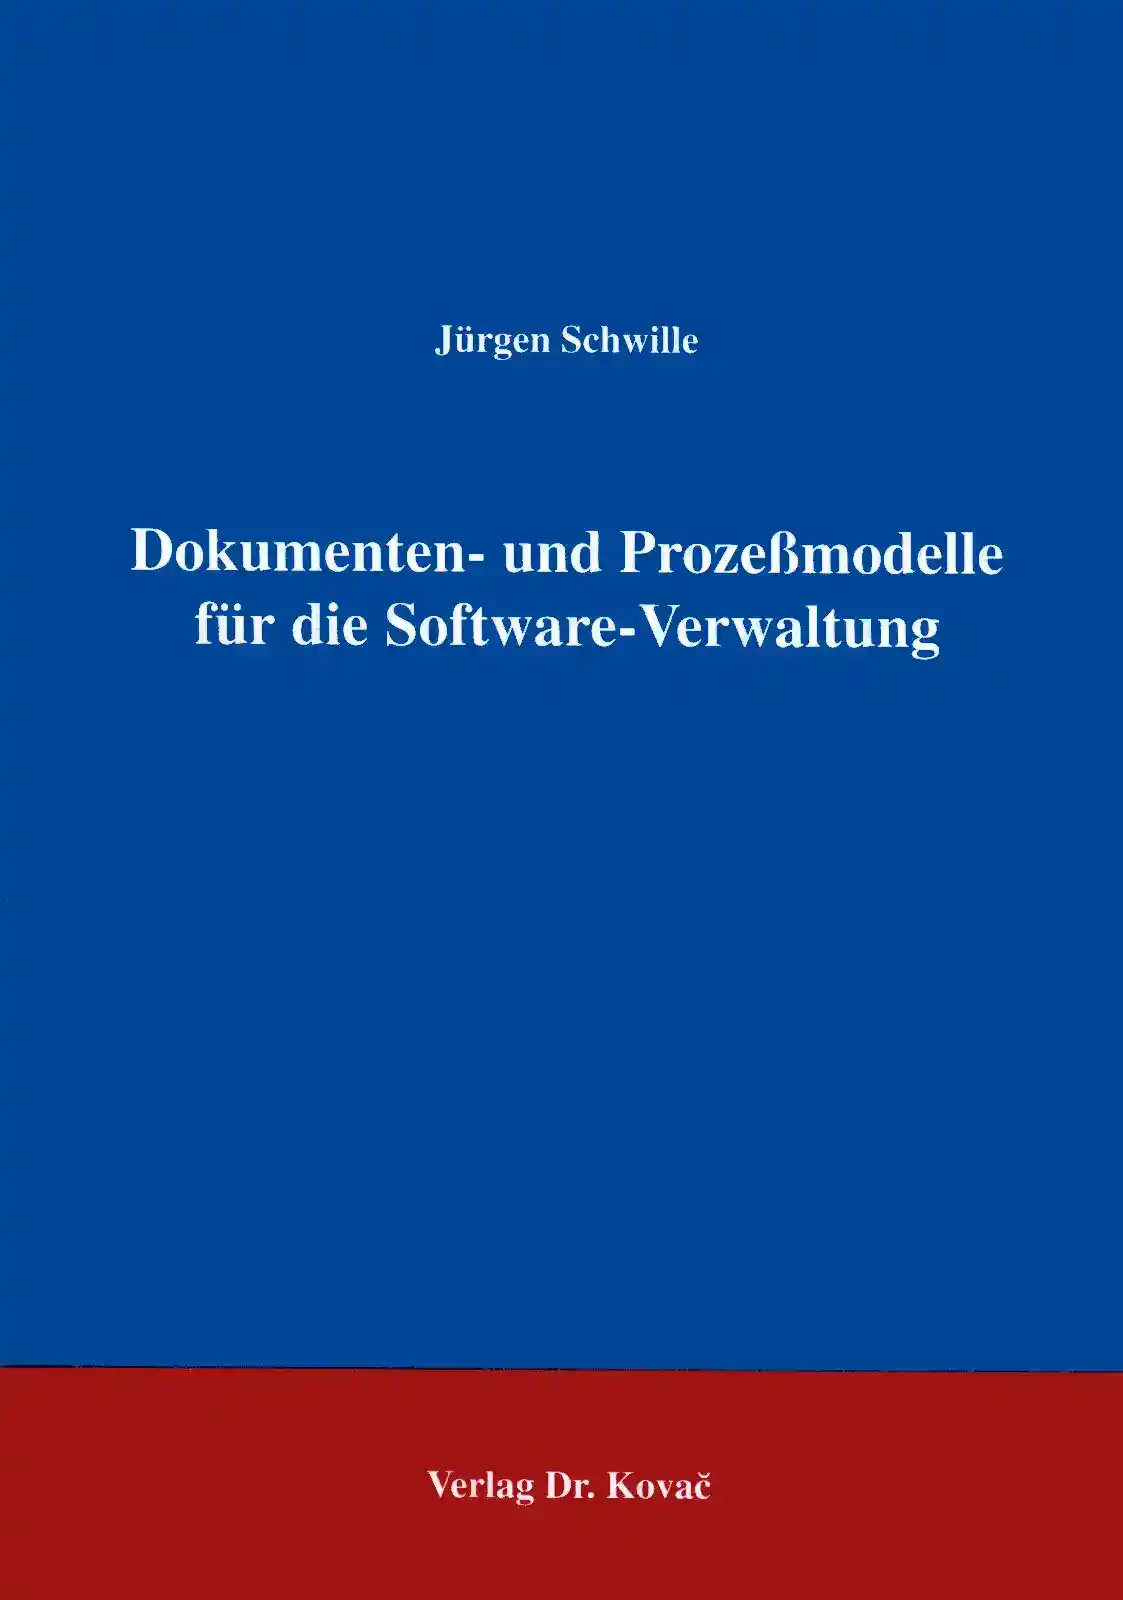 Dokumenten- und Prozeßmodelle für die Software-Verwaltung (Forschungsarbeit)